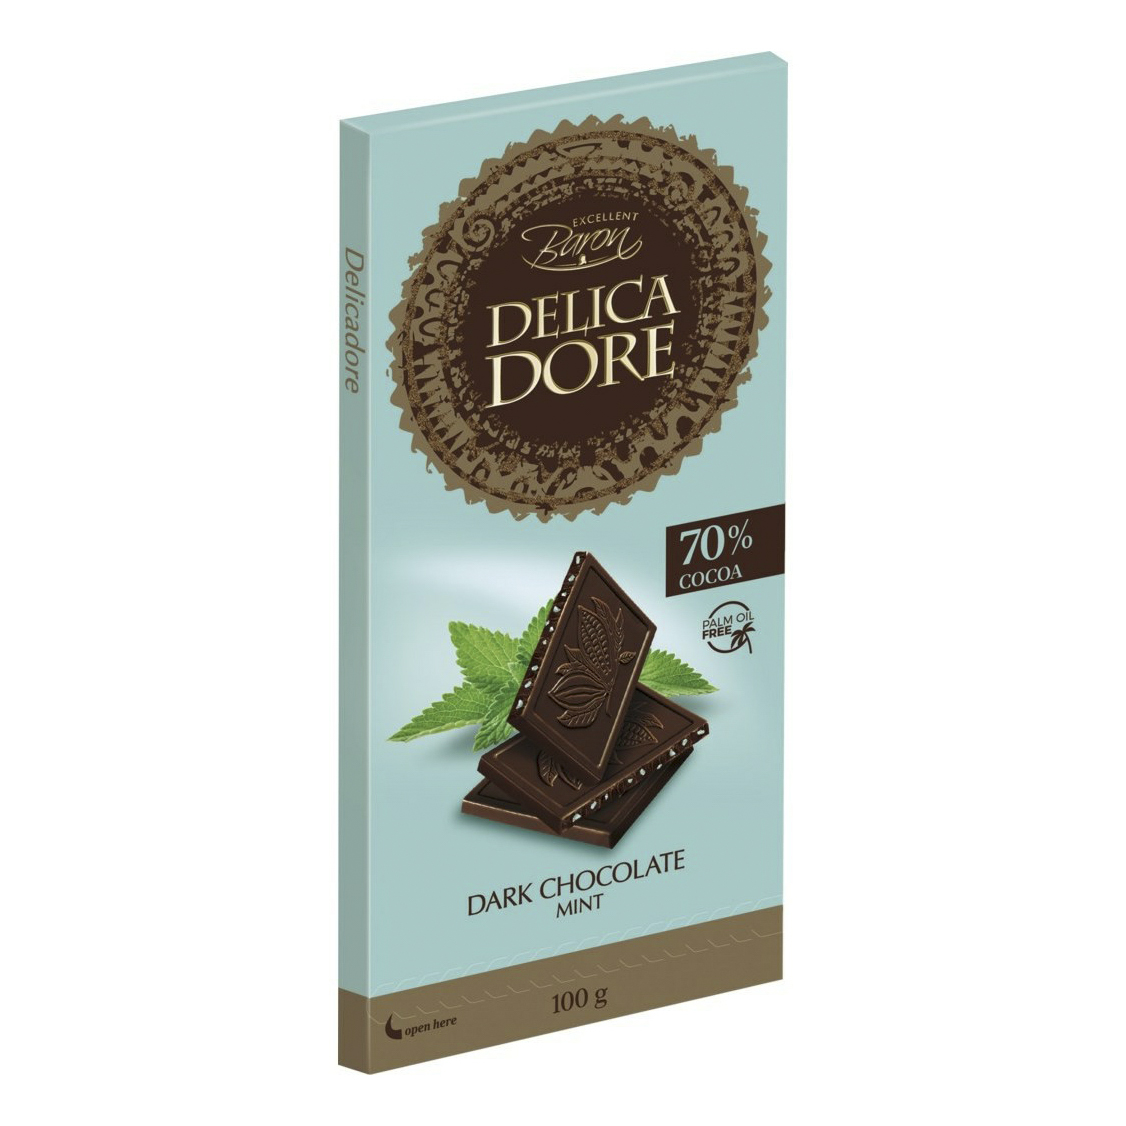 Шоколад Baron Delicadore темный со вкусом мяты 100 г